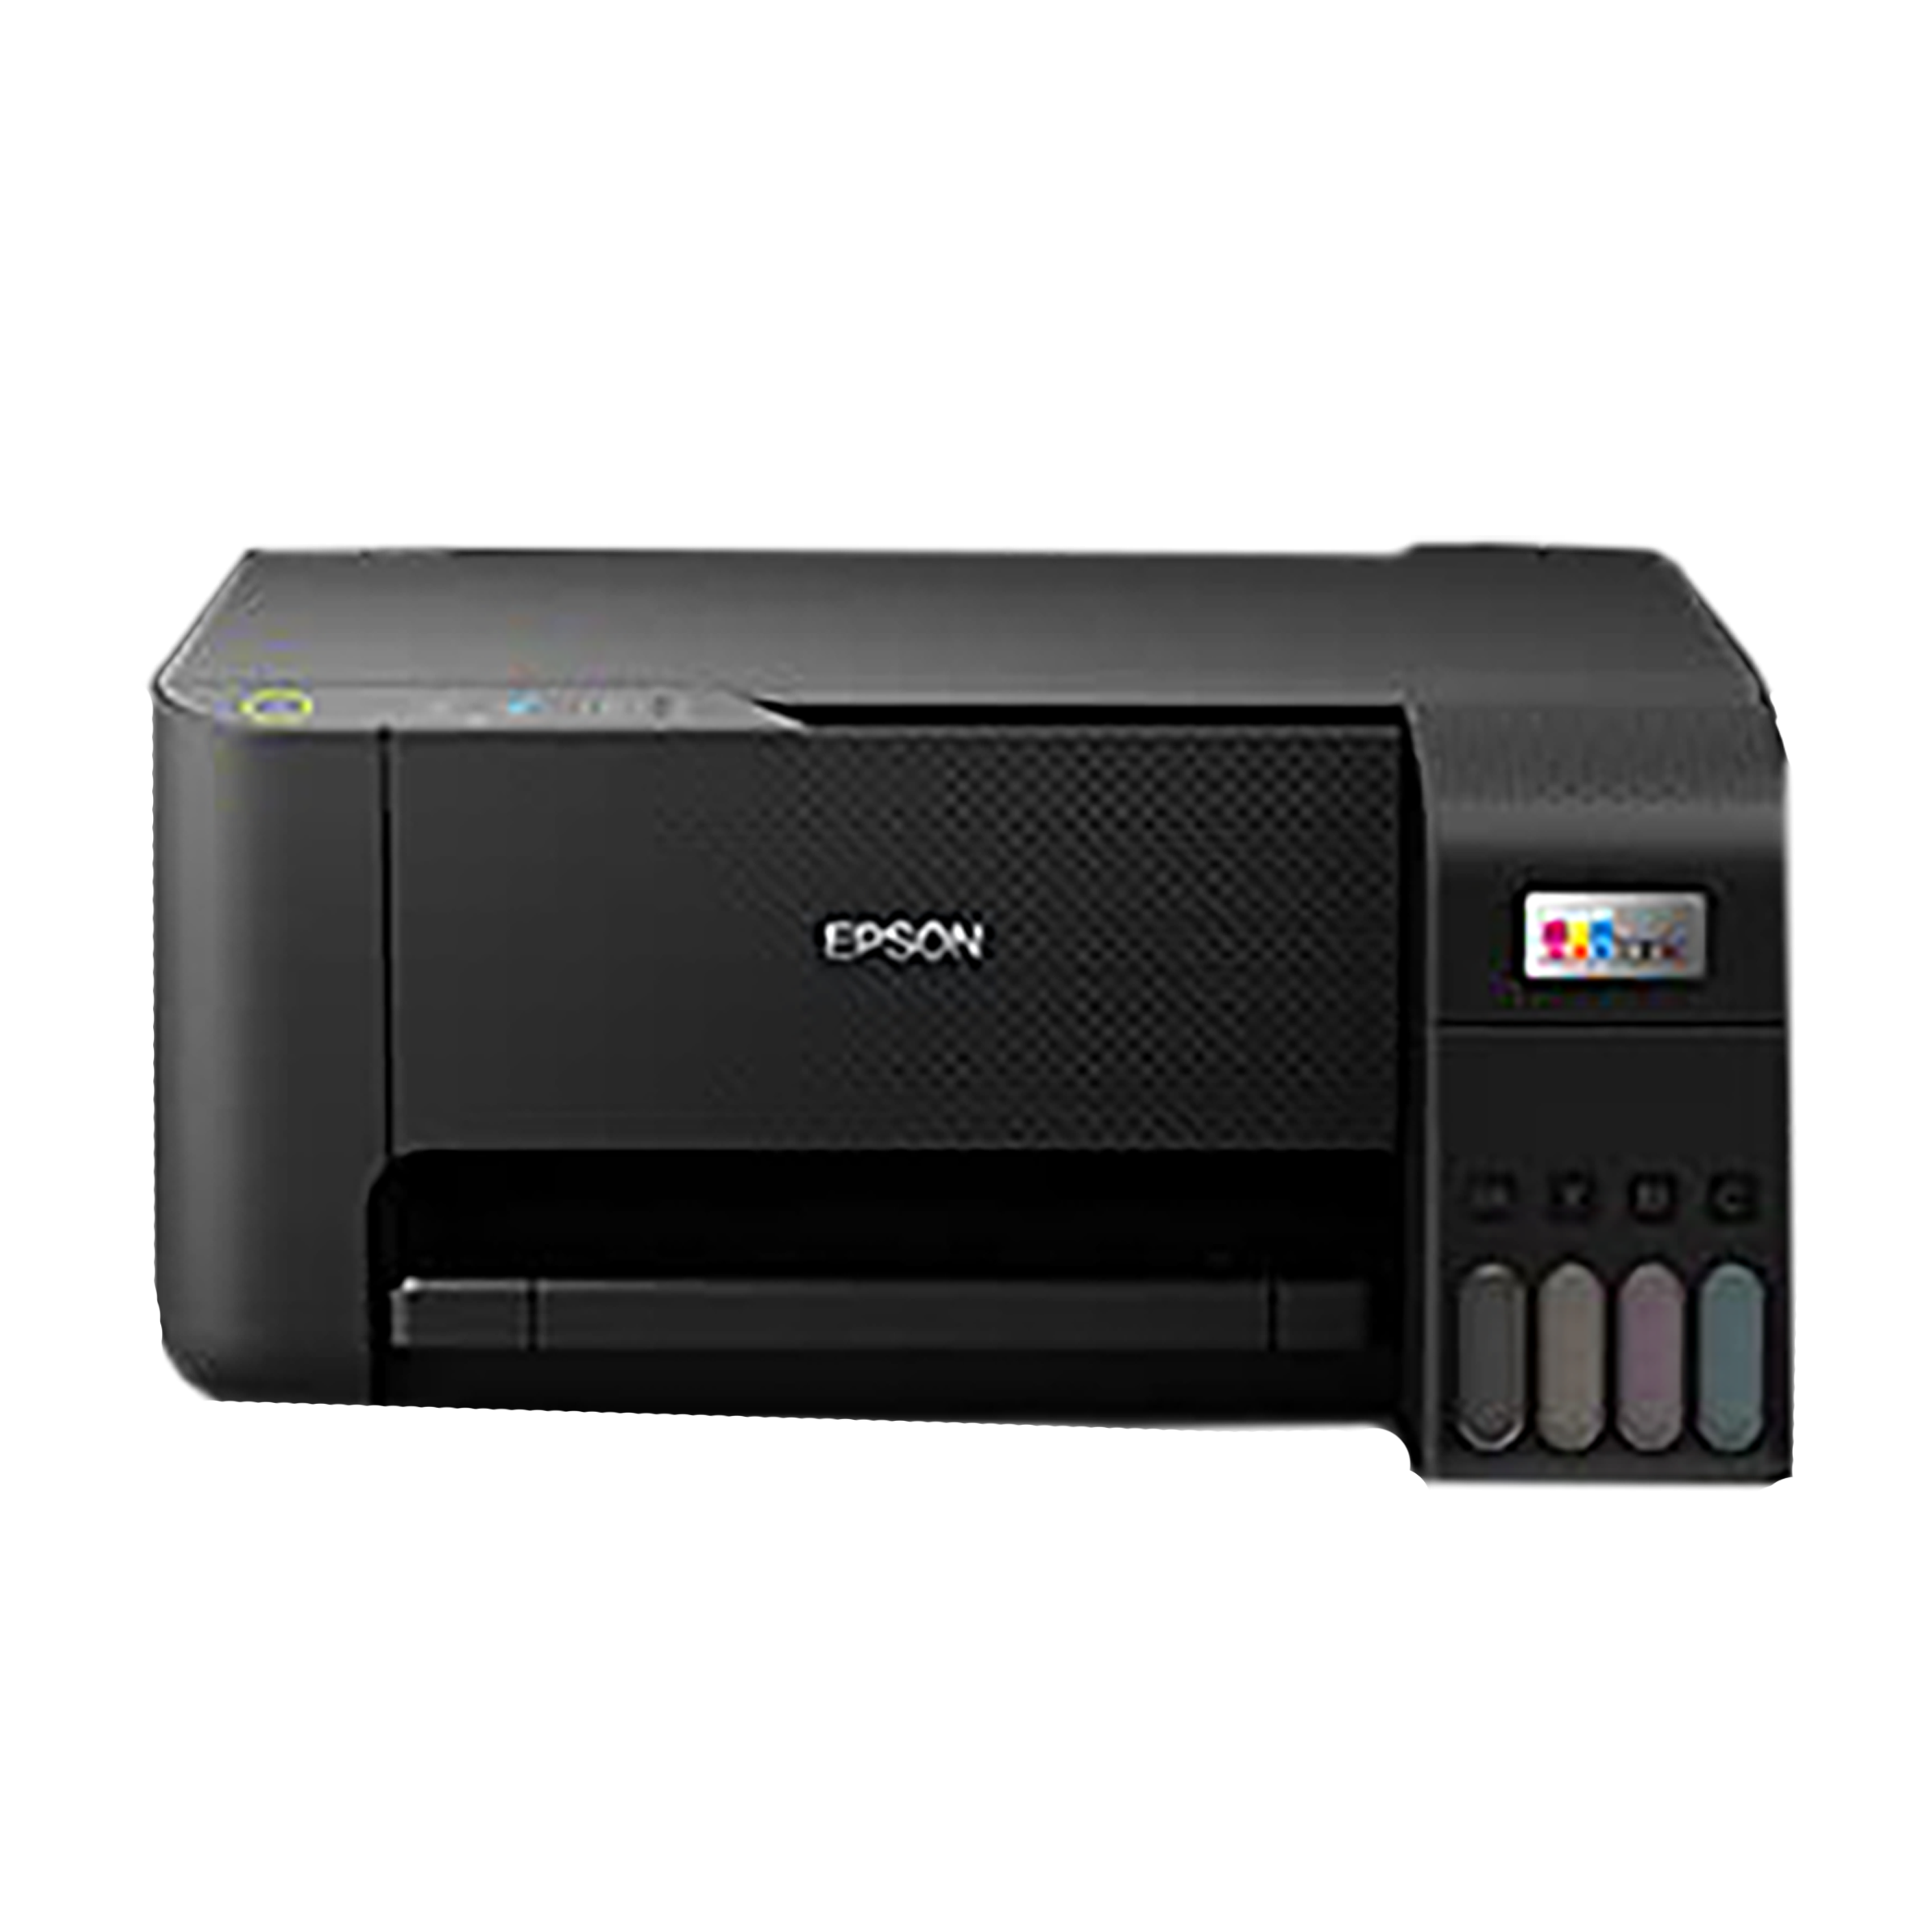 Epson EcoTank ET-2710 review: A basic but efficient multifunctional printer